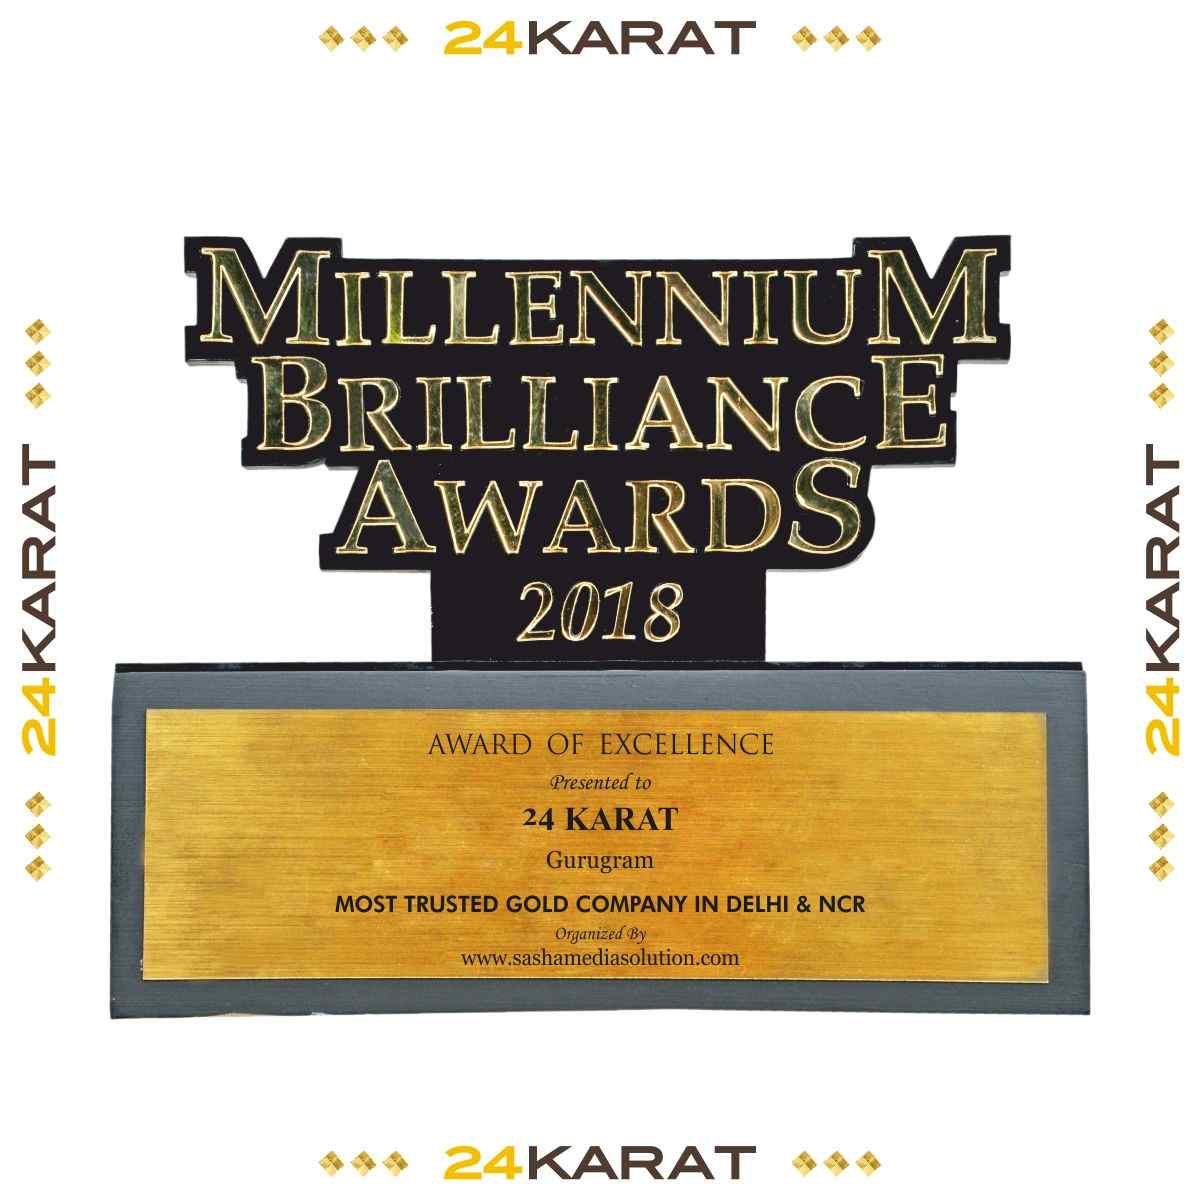  Millenium Brilliance Awards